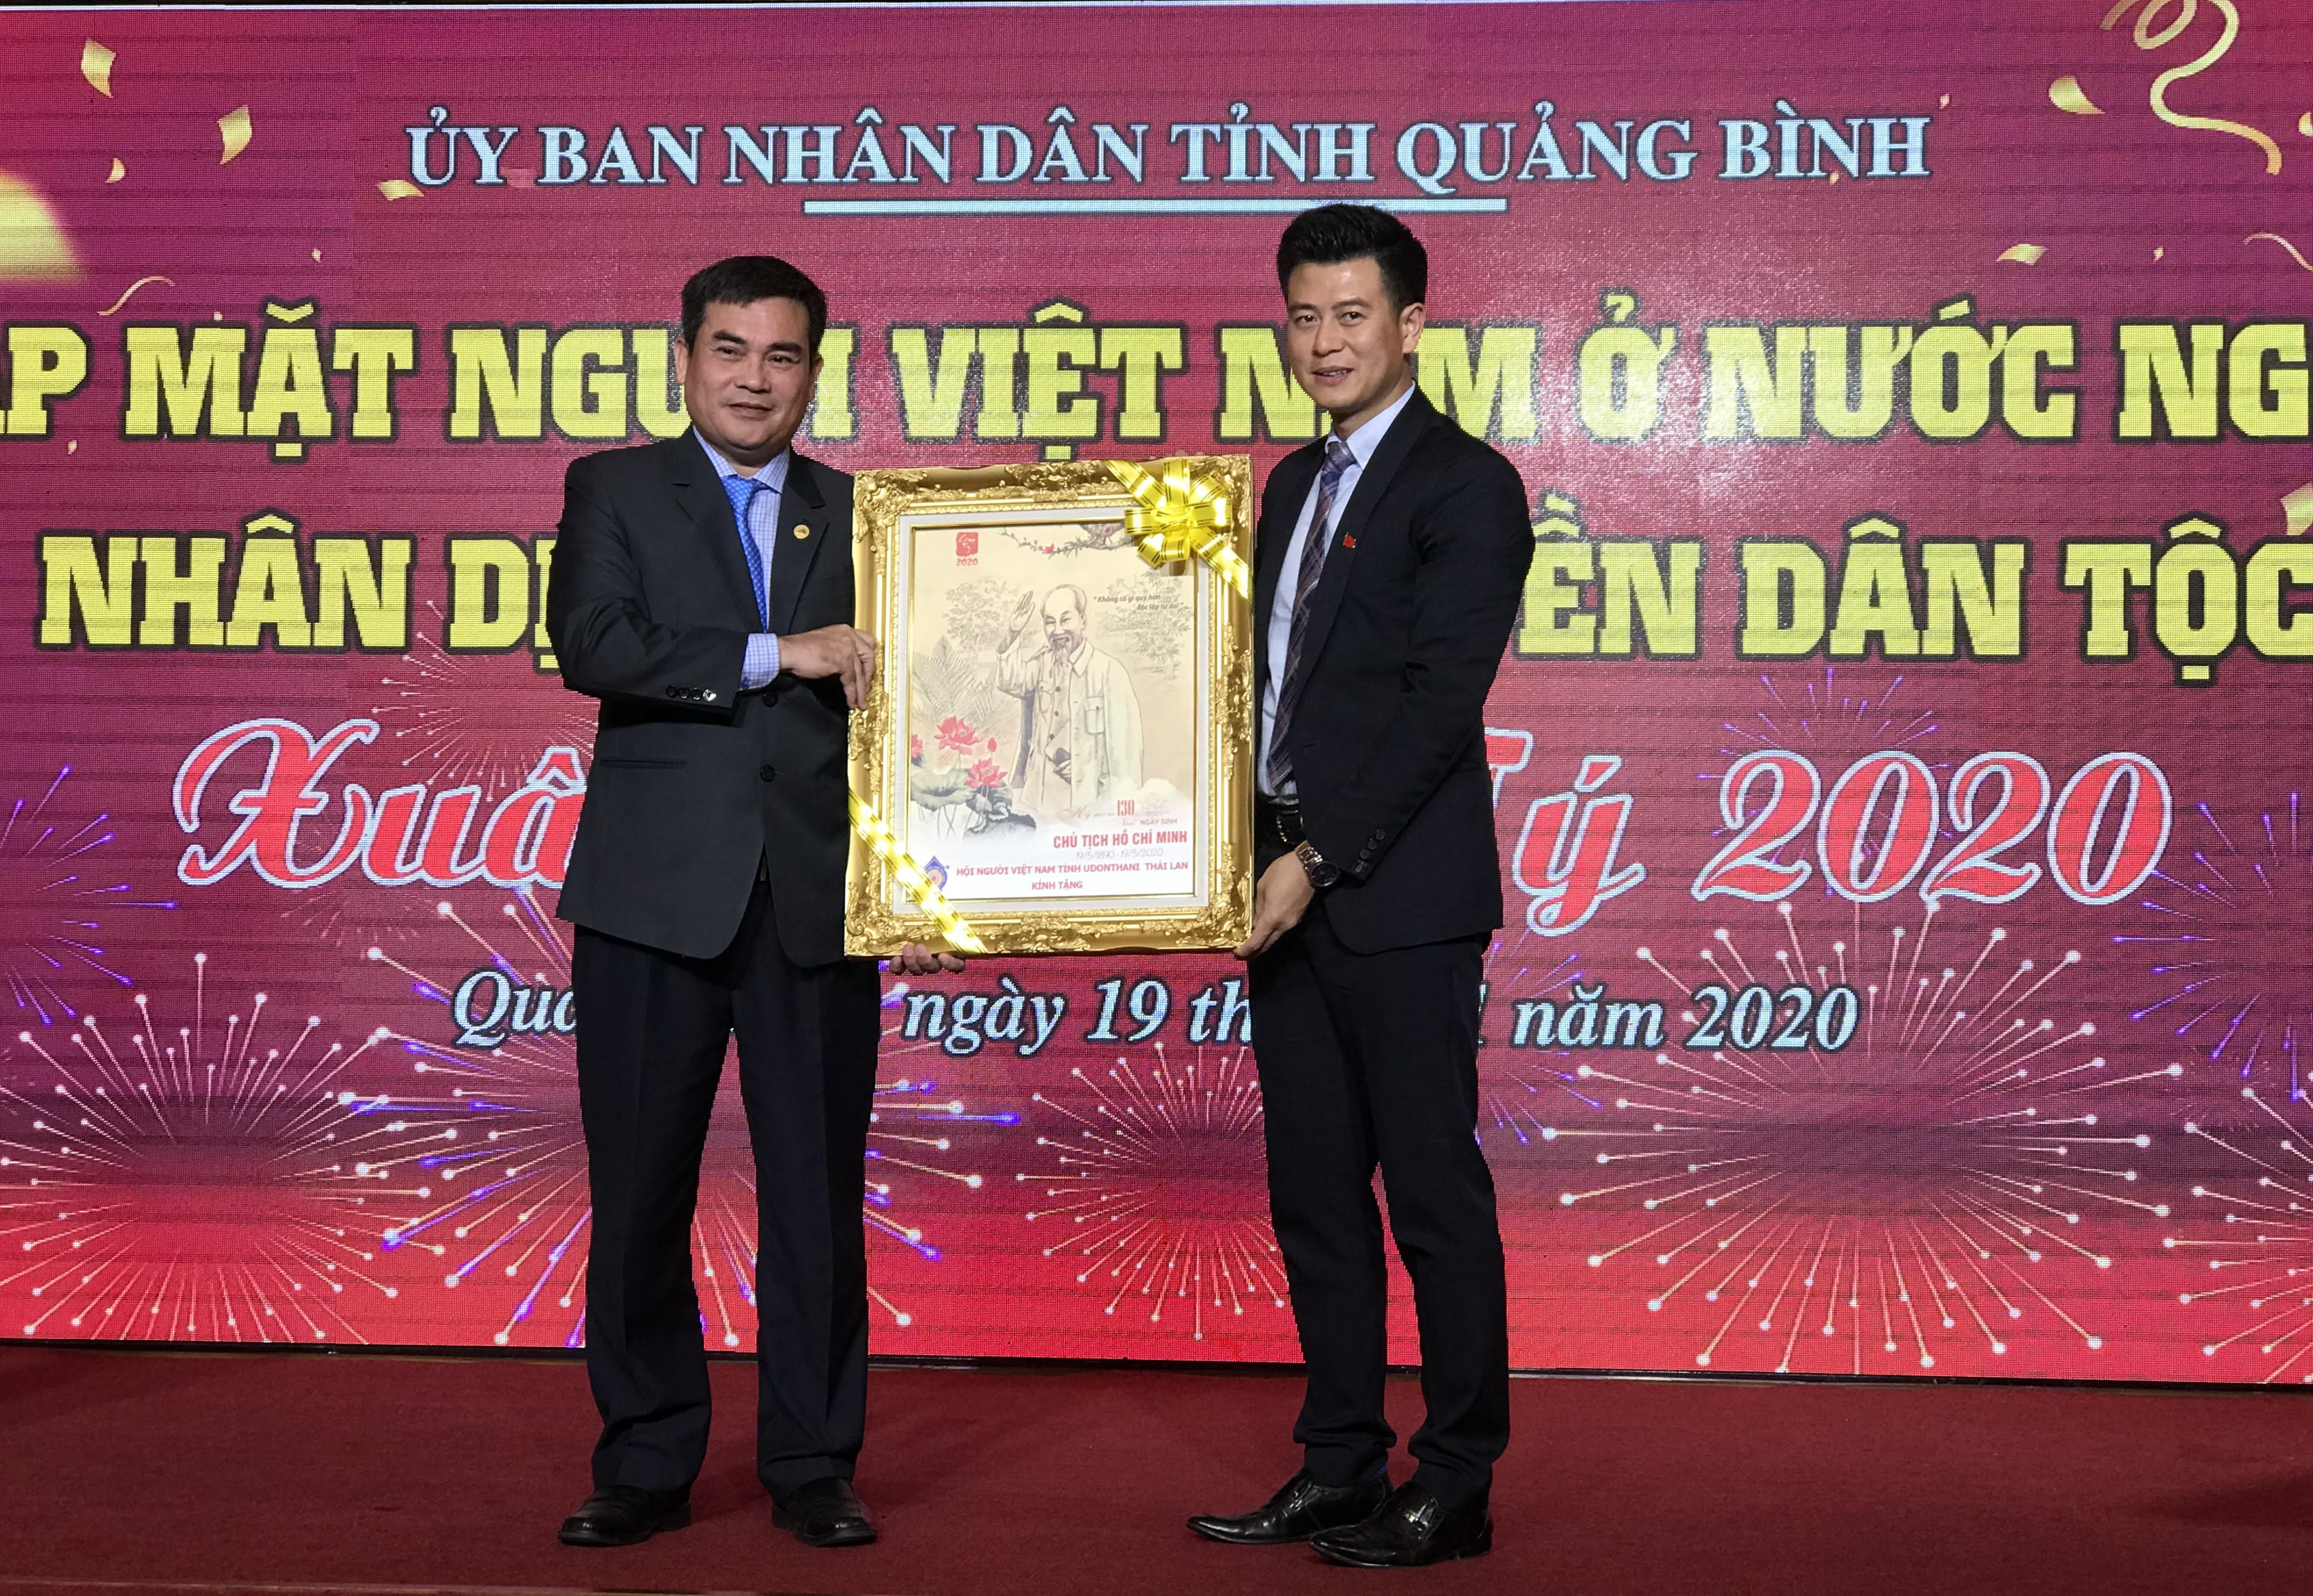 Đại diện Hội người Việt Nam tỉnh Udonthani, Thái Lan tặng bức tranh lưu niệm hình Chủ tịch Hồ Chí Minh cho Ban tổ chức buổi gặp mặt 